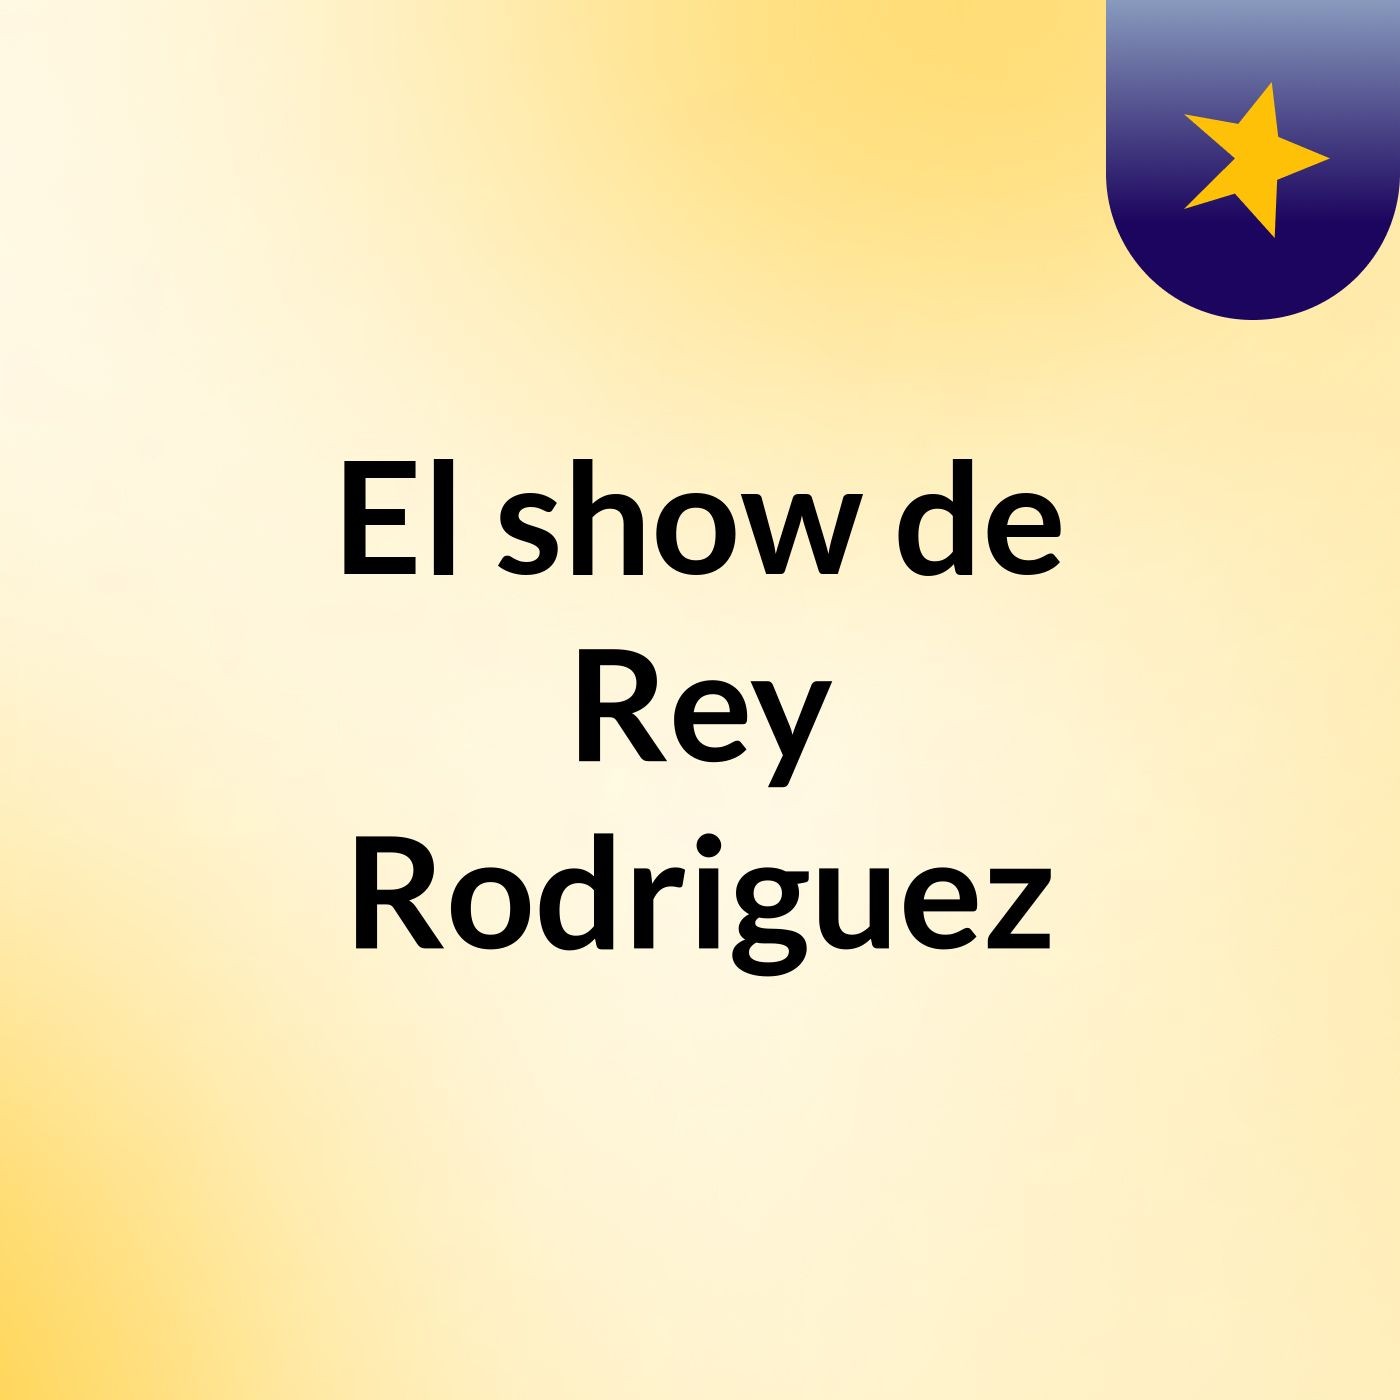 El show de Rey Rodriguez